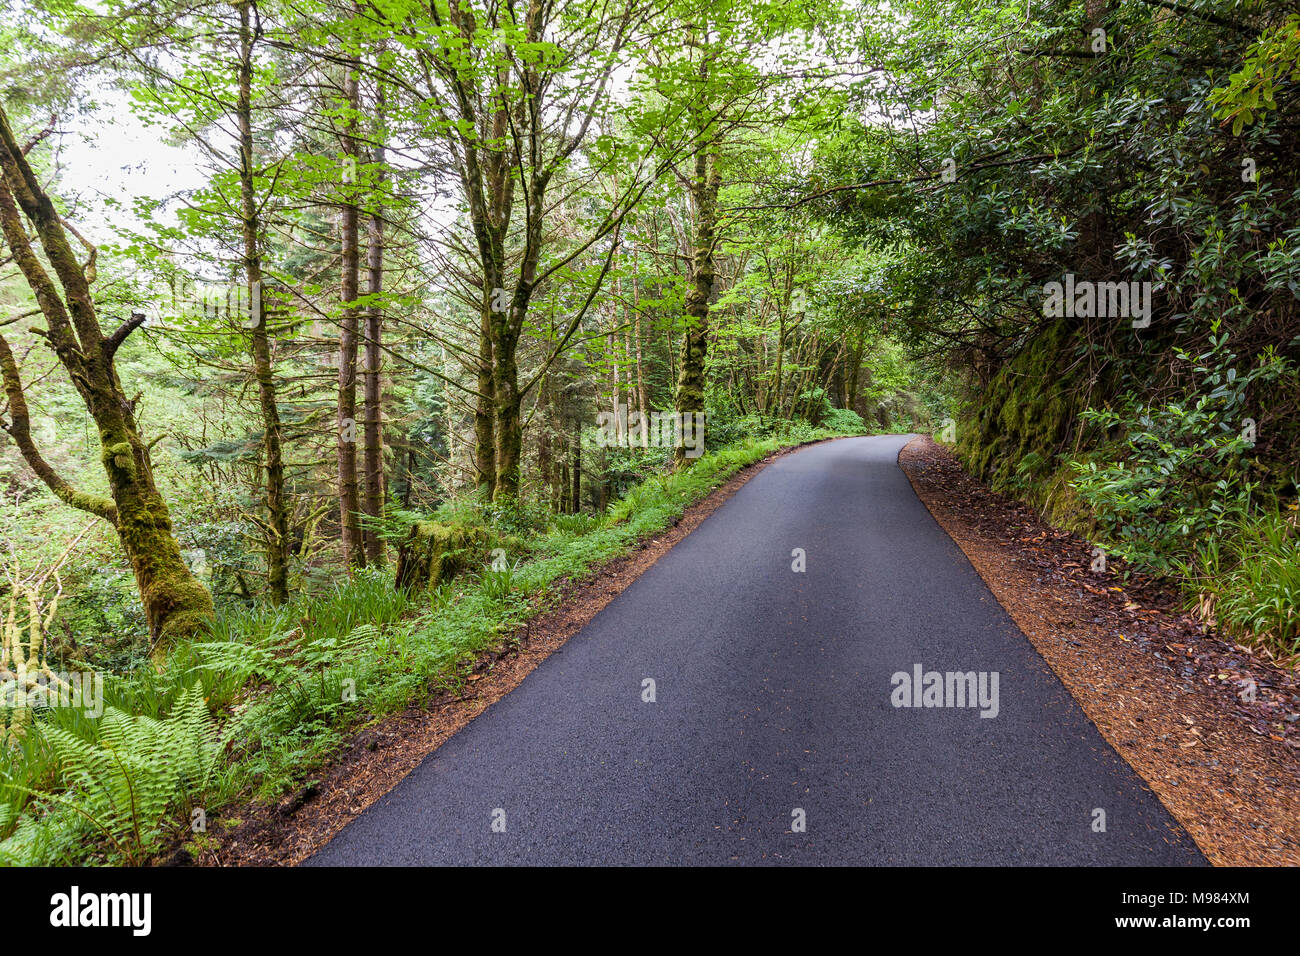 Schottland, Westküste, Highlands, bei Plockton, Straße durch einen dichten Wald, Asphalt, dichte Vegetation, grün, Weg, Richtung Stockfoto